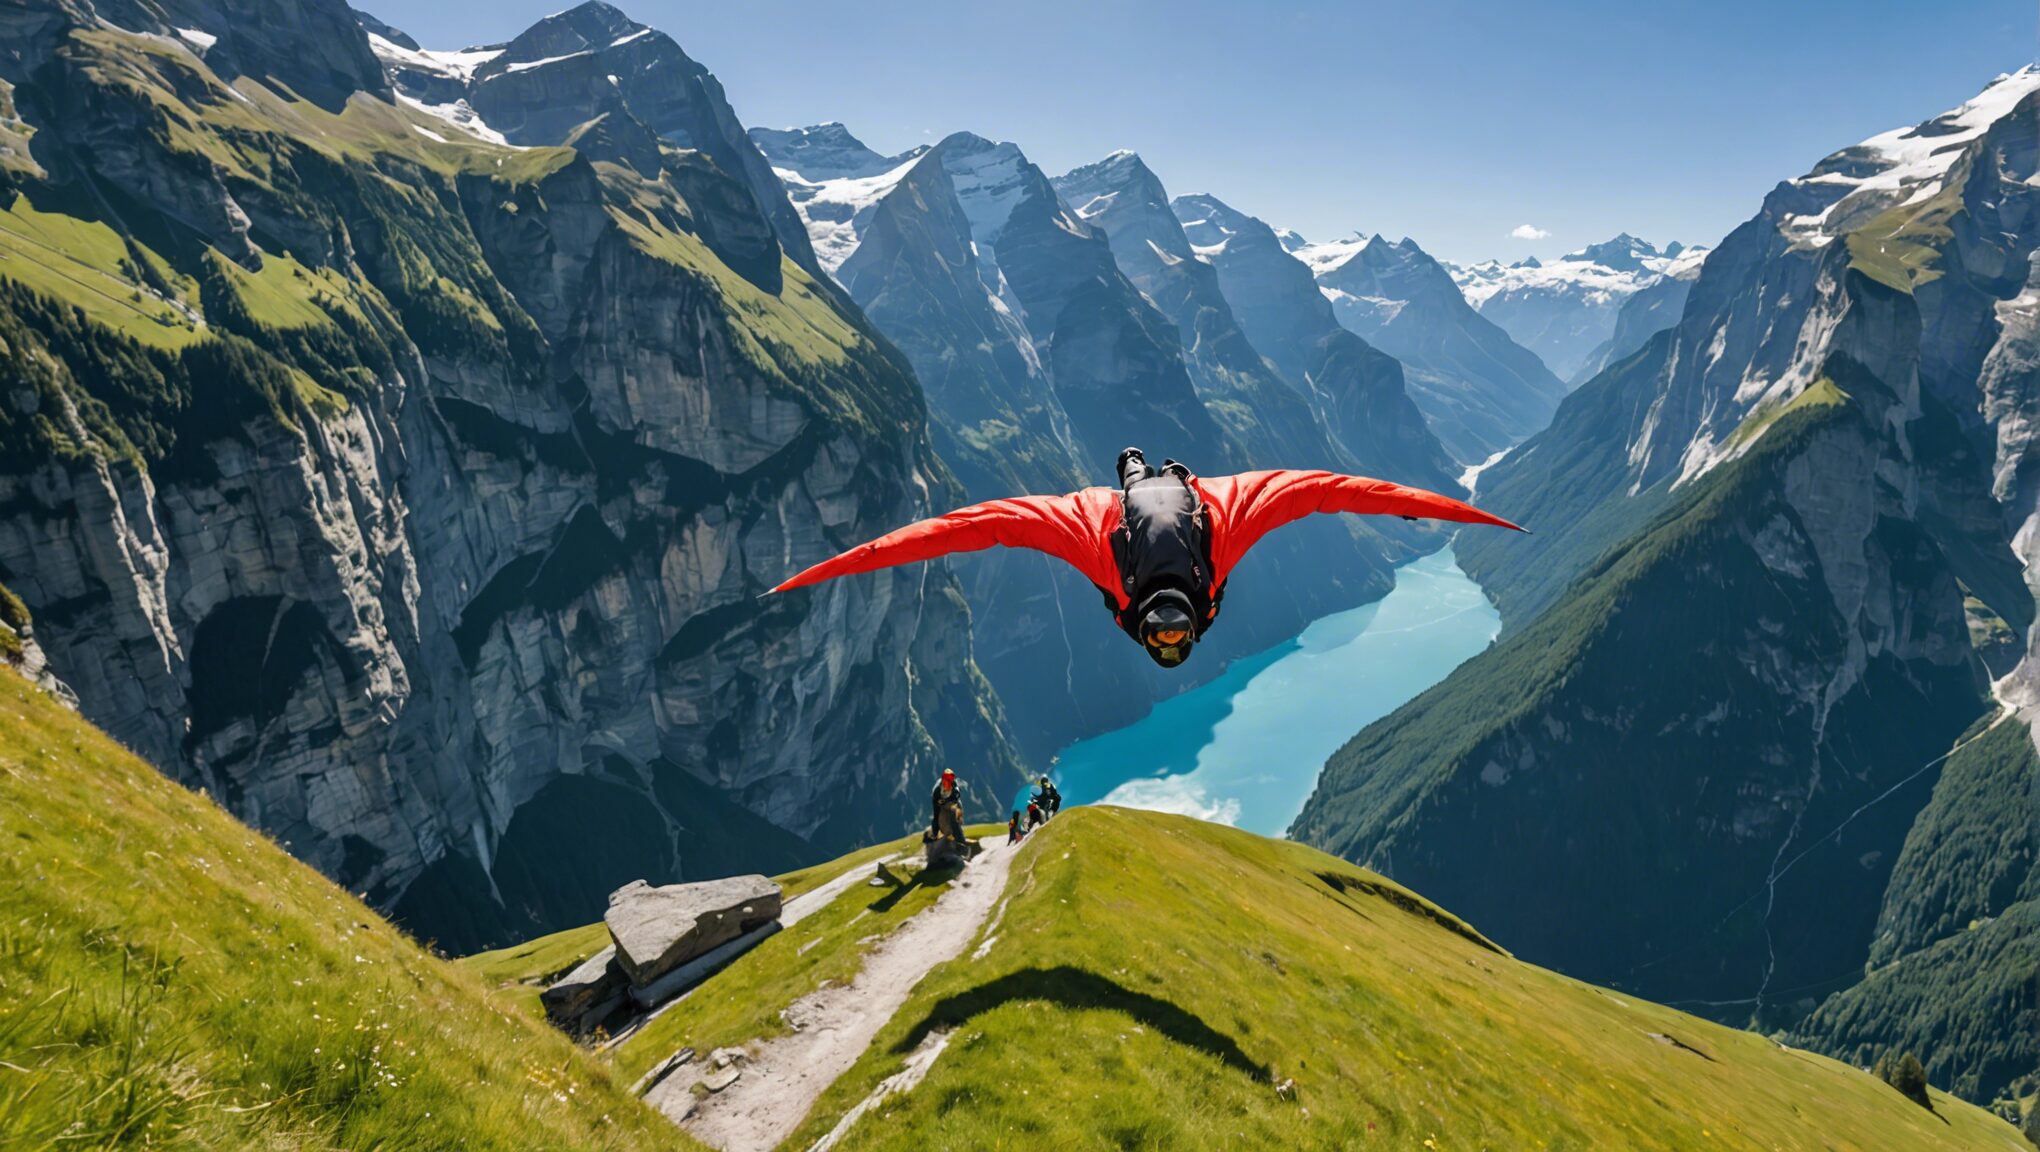 découvrez le guide ultime pour vivre une expérience inoubliable en sautant en wingsuit à lauterbrunnen, un vol qui vous transportera au paradis !